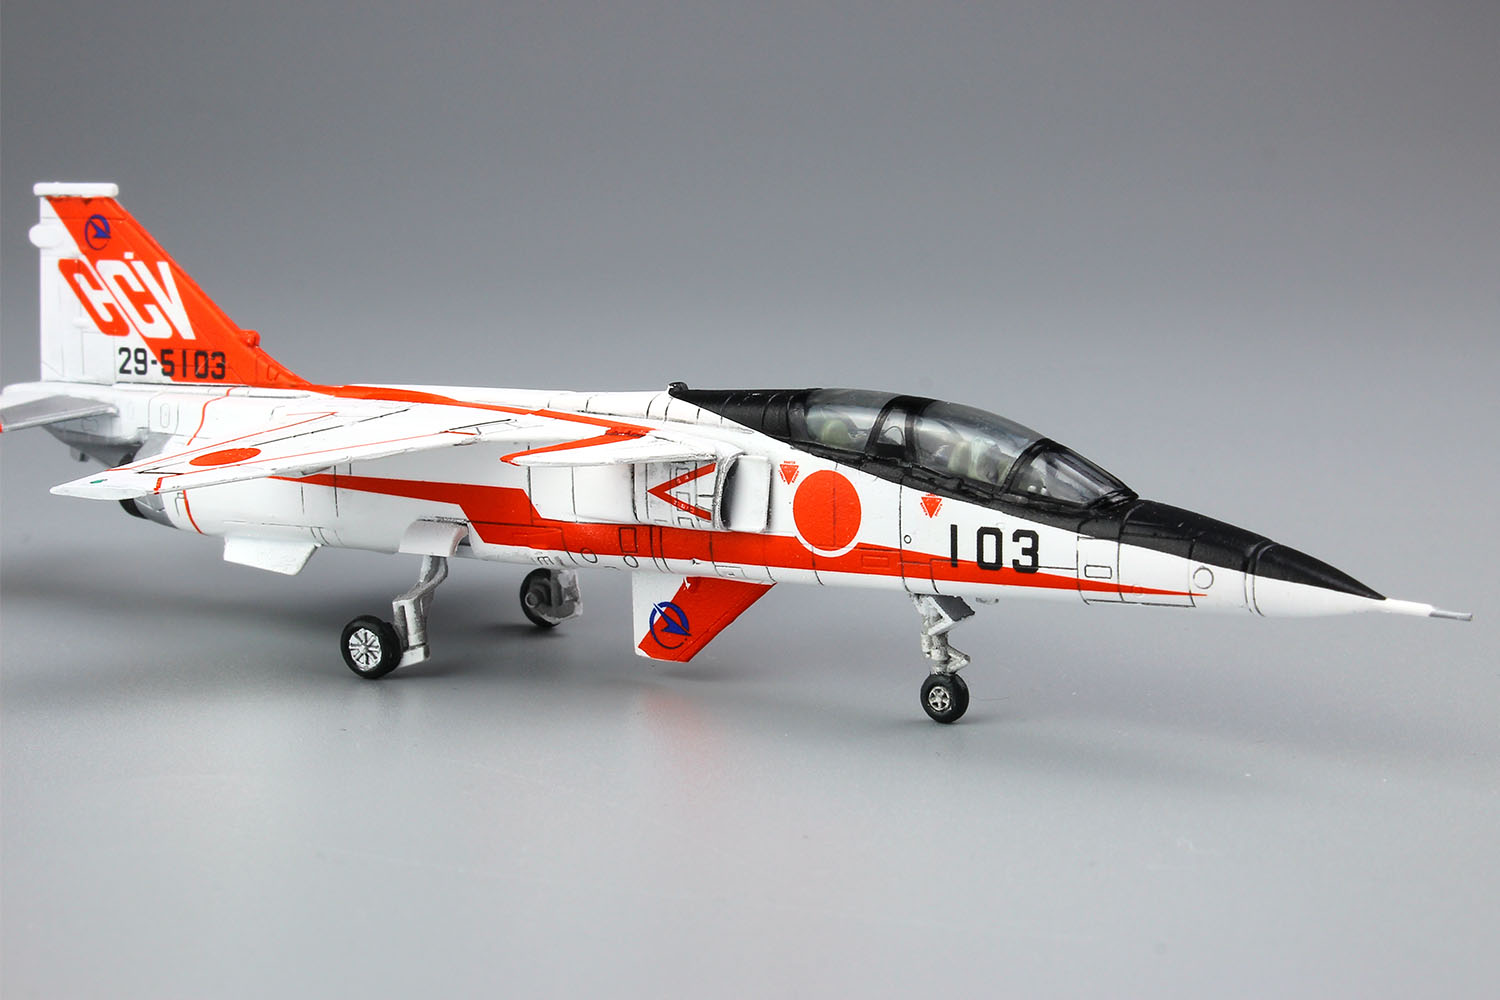 PLATZ 1/144 JASDF RESERACH AIRCRAFT T-2 CCV